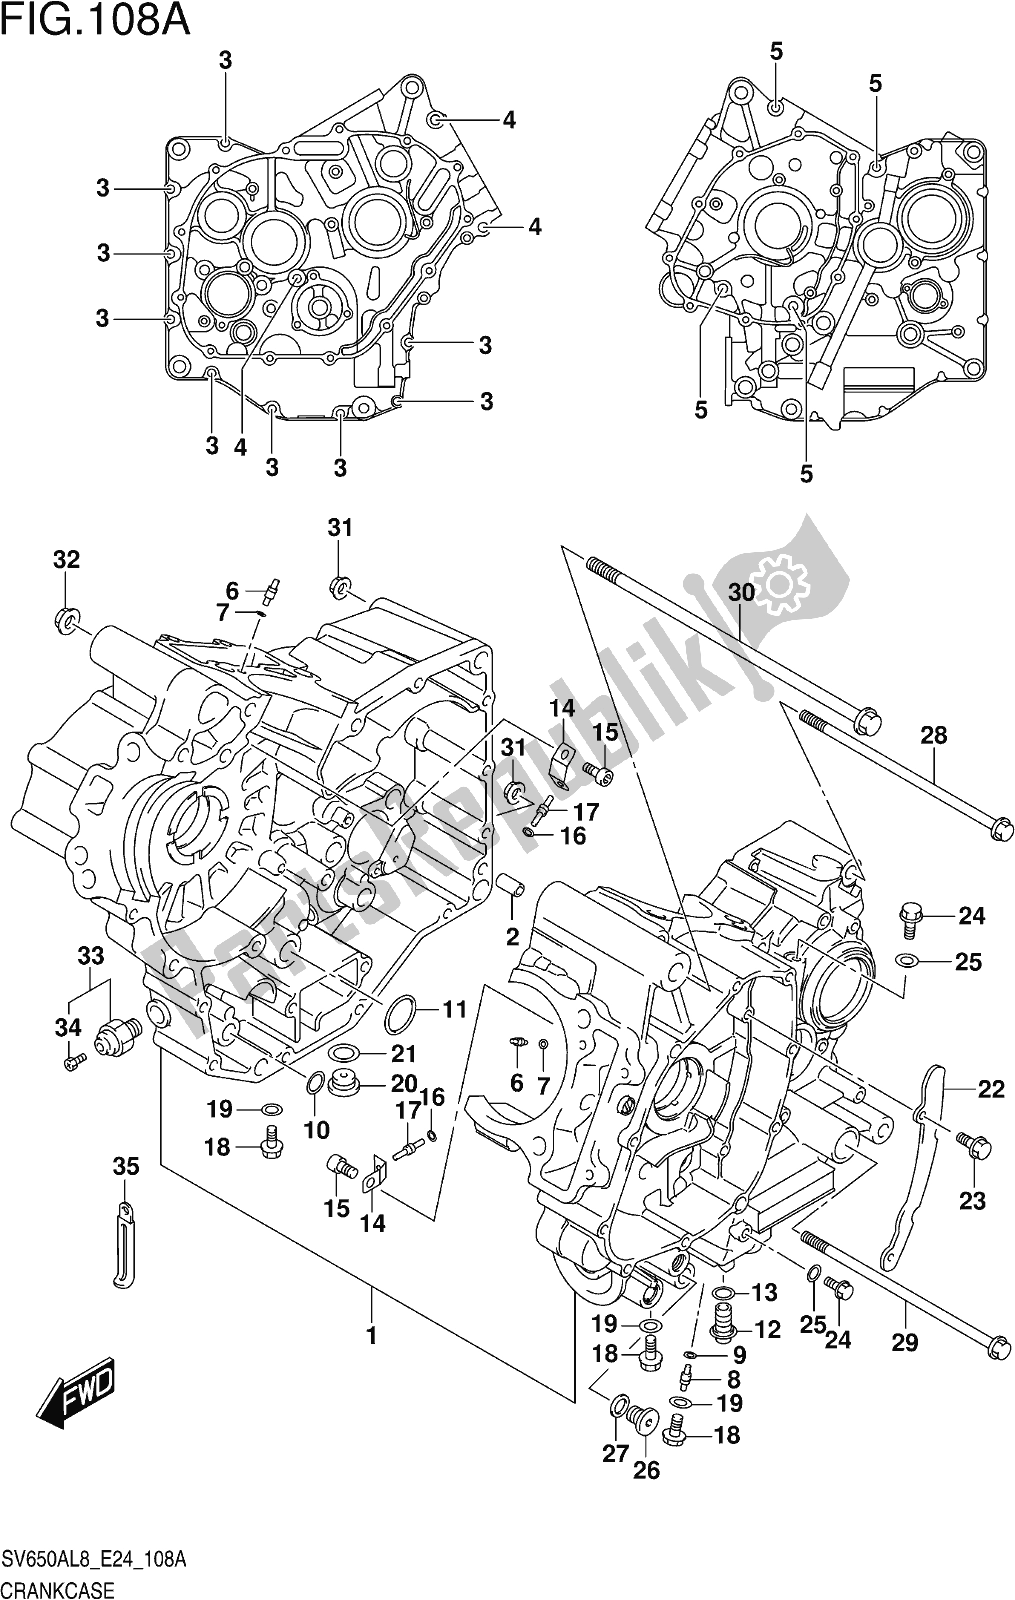 Toutes les pièces pour le Fig. 108a Crankcase du Suzuki SV 650 AU 2018